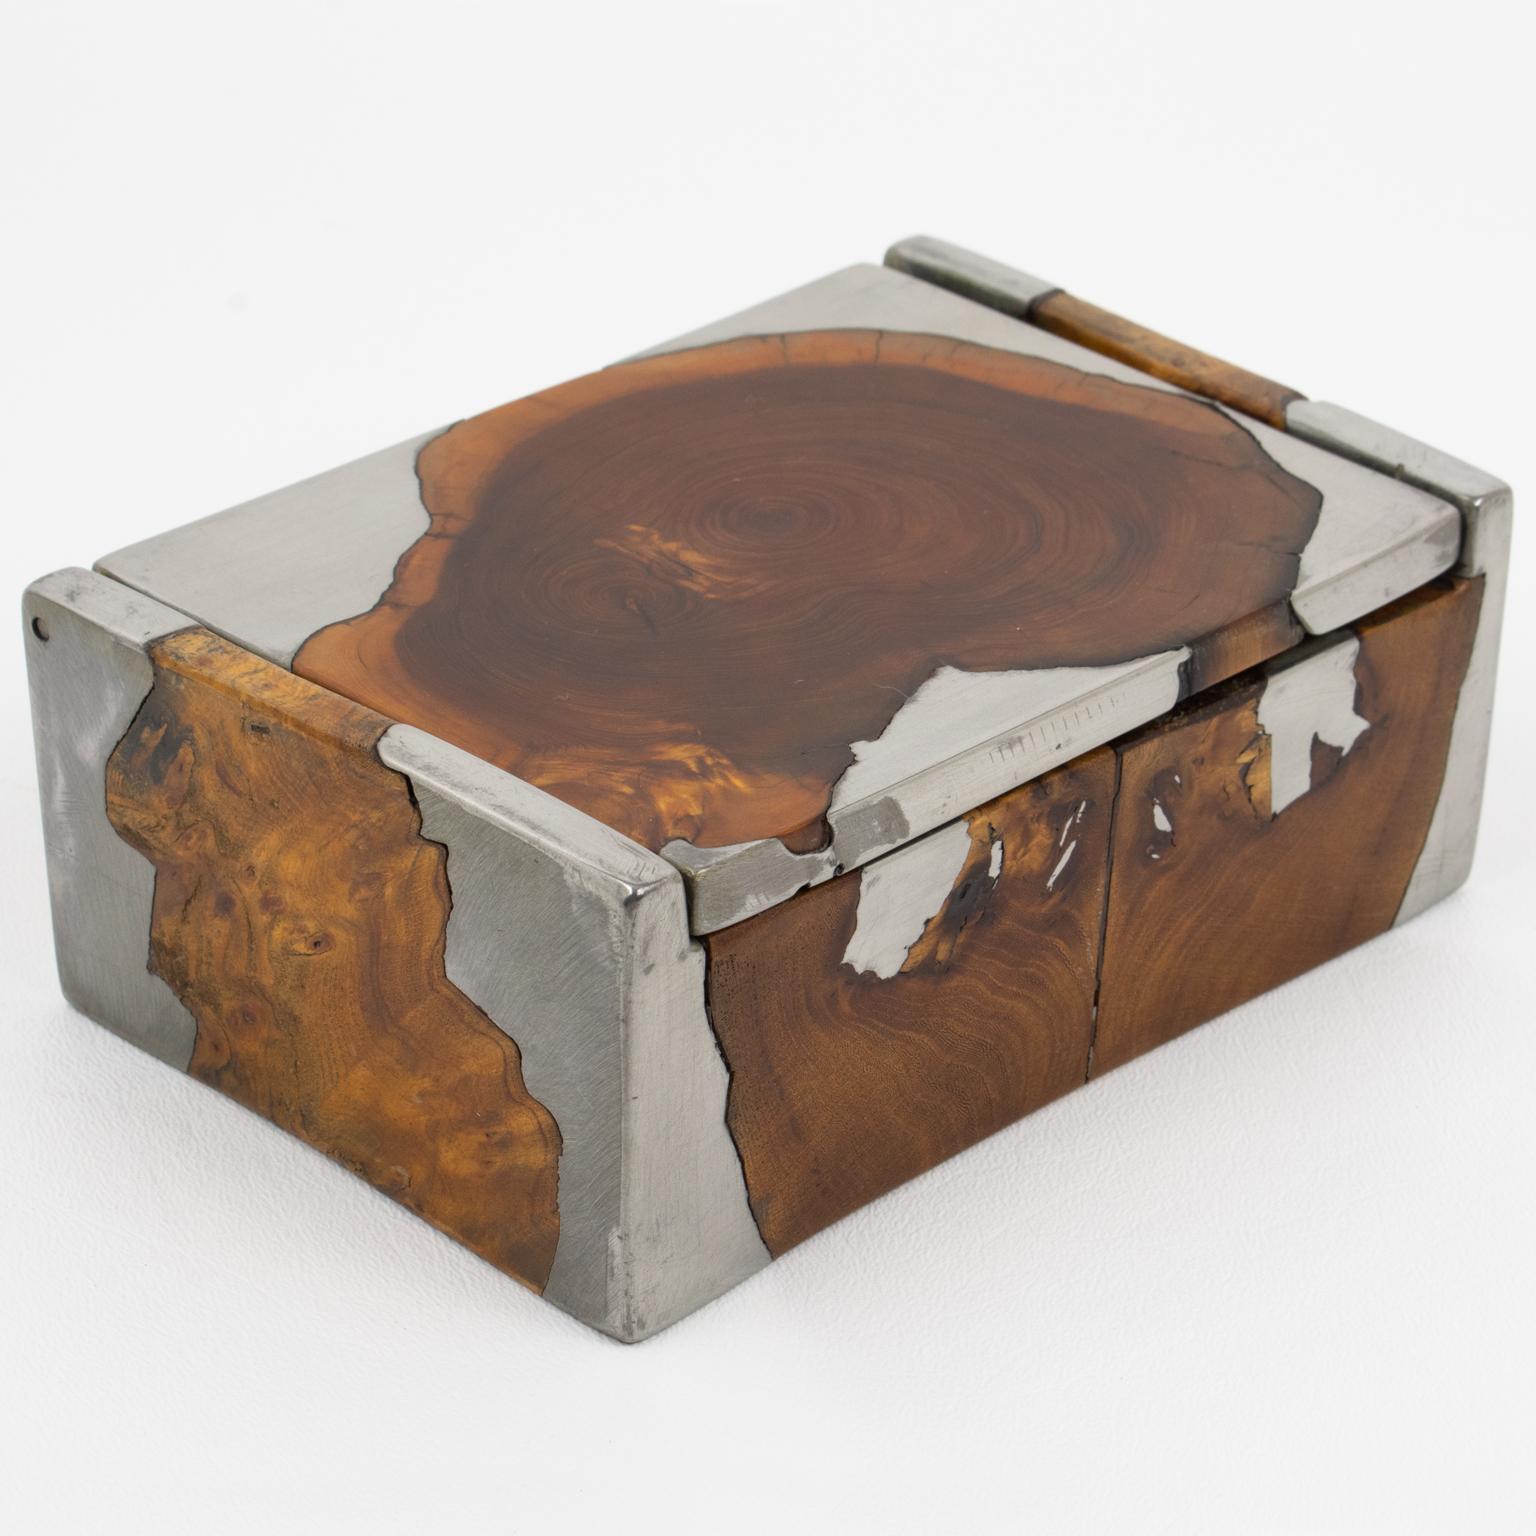 Cette boîte à couvercle brutaliste très inhabituelle a été fabriquée à la main en France dans les années 1960. Cette pièce de forme rectangulaire est composée de ronce de bois et d'étain mélangés de manière complexe pour former un design